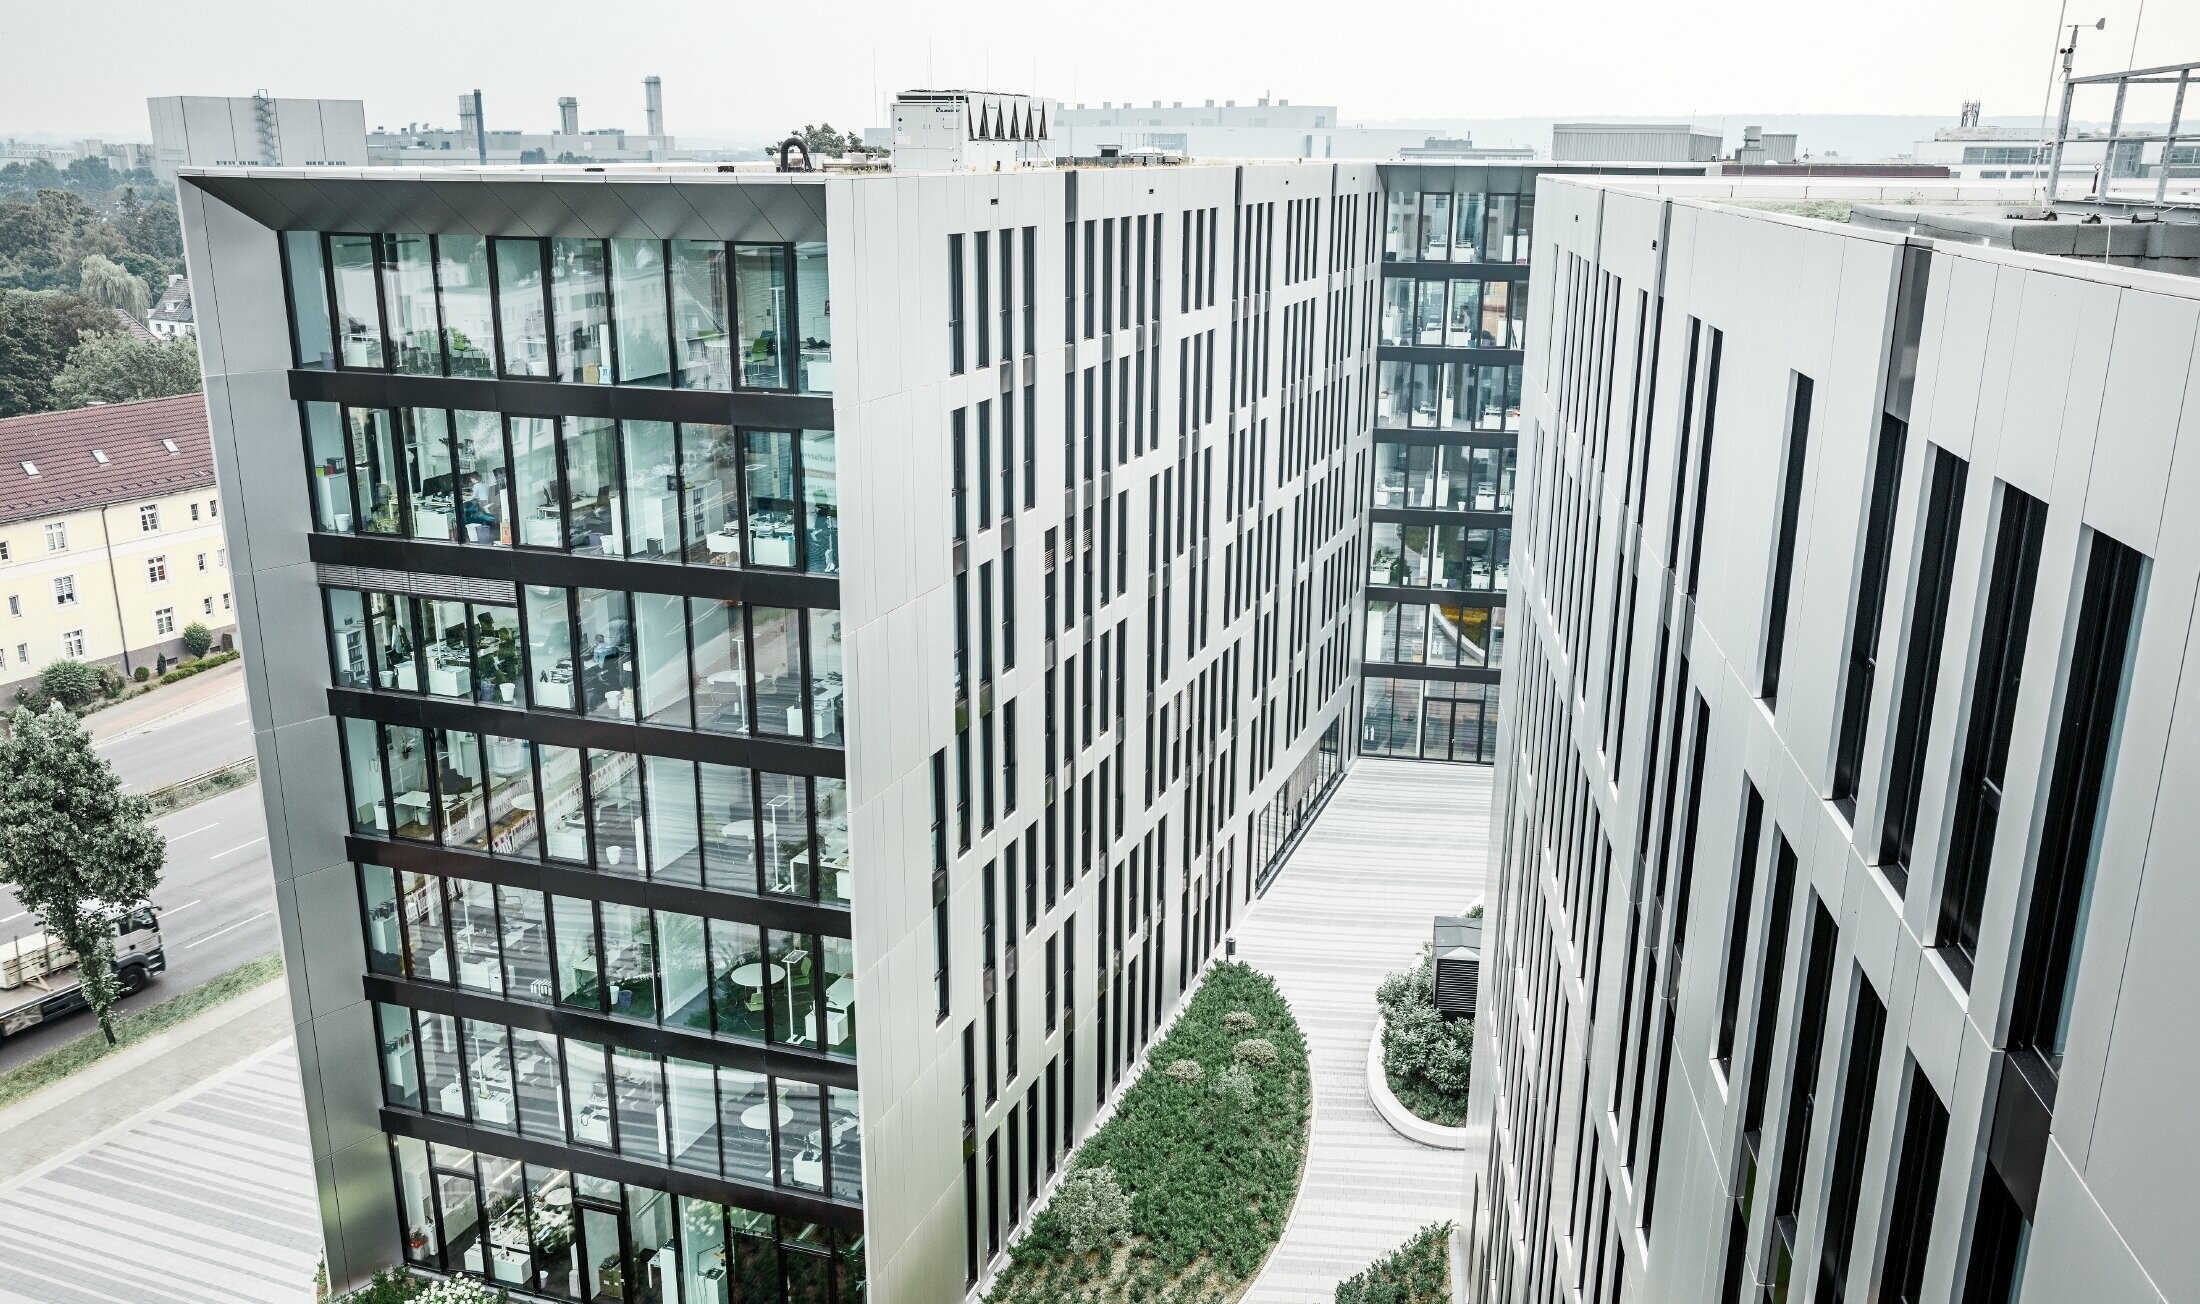 Futuristic aluminium façade made of aluminium composite panels in brushed aluminium on the Clara and Robert building complex s in Düsseldorf (Germany).